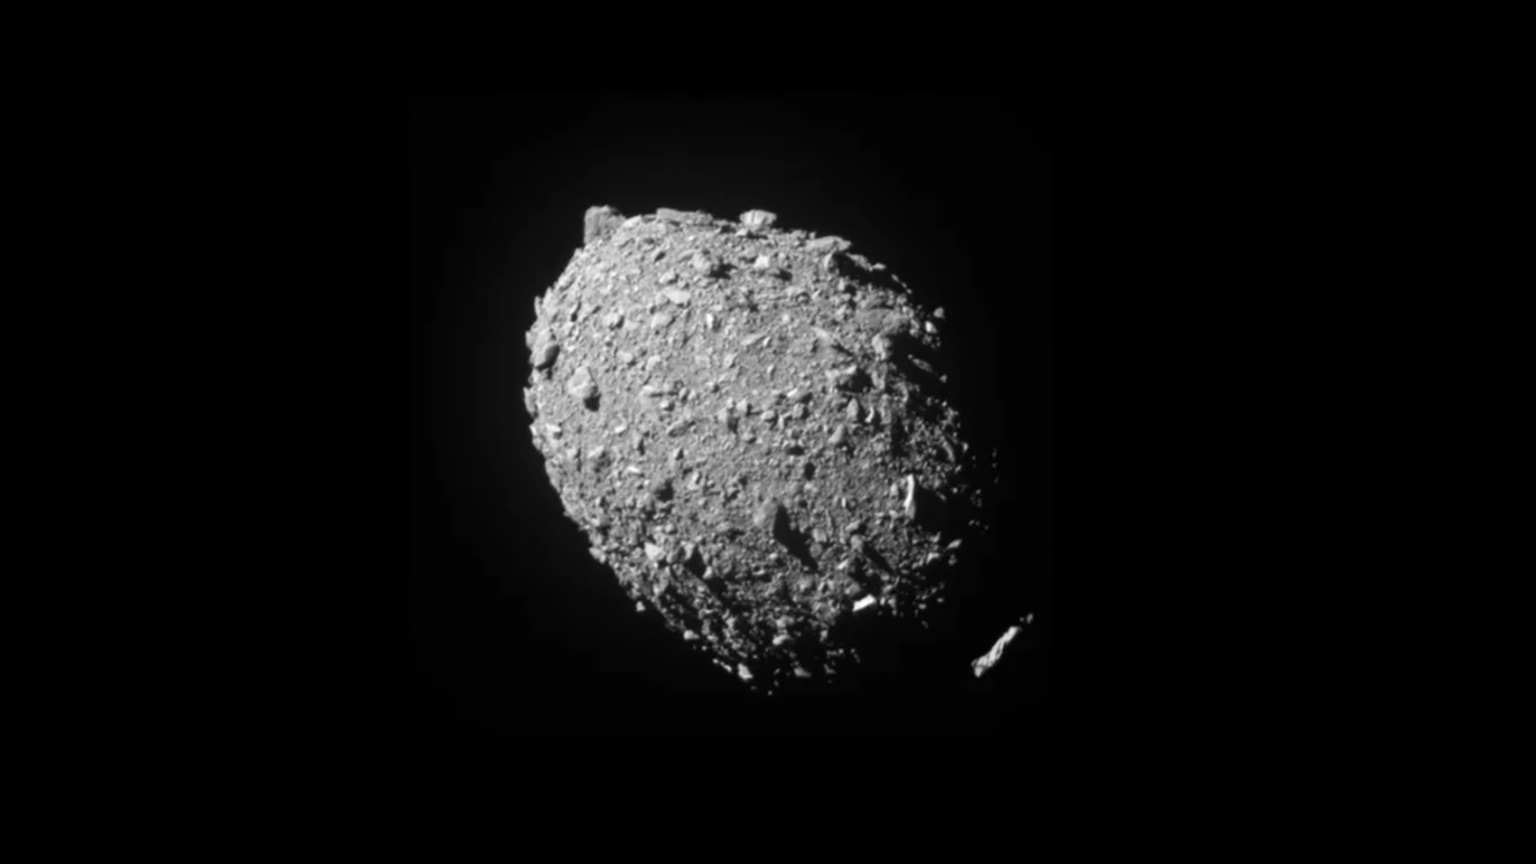 La órbita y la forma del asteroide cambian tras el impacto del DART, según confirma la NASA